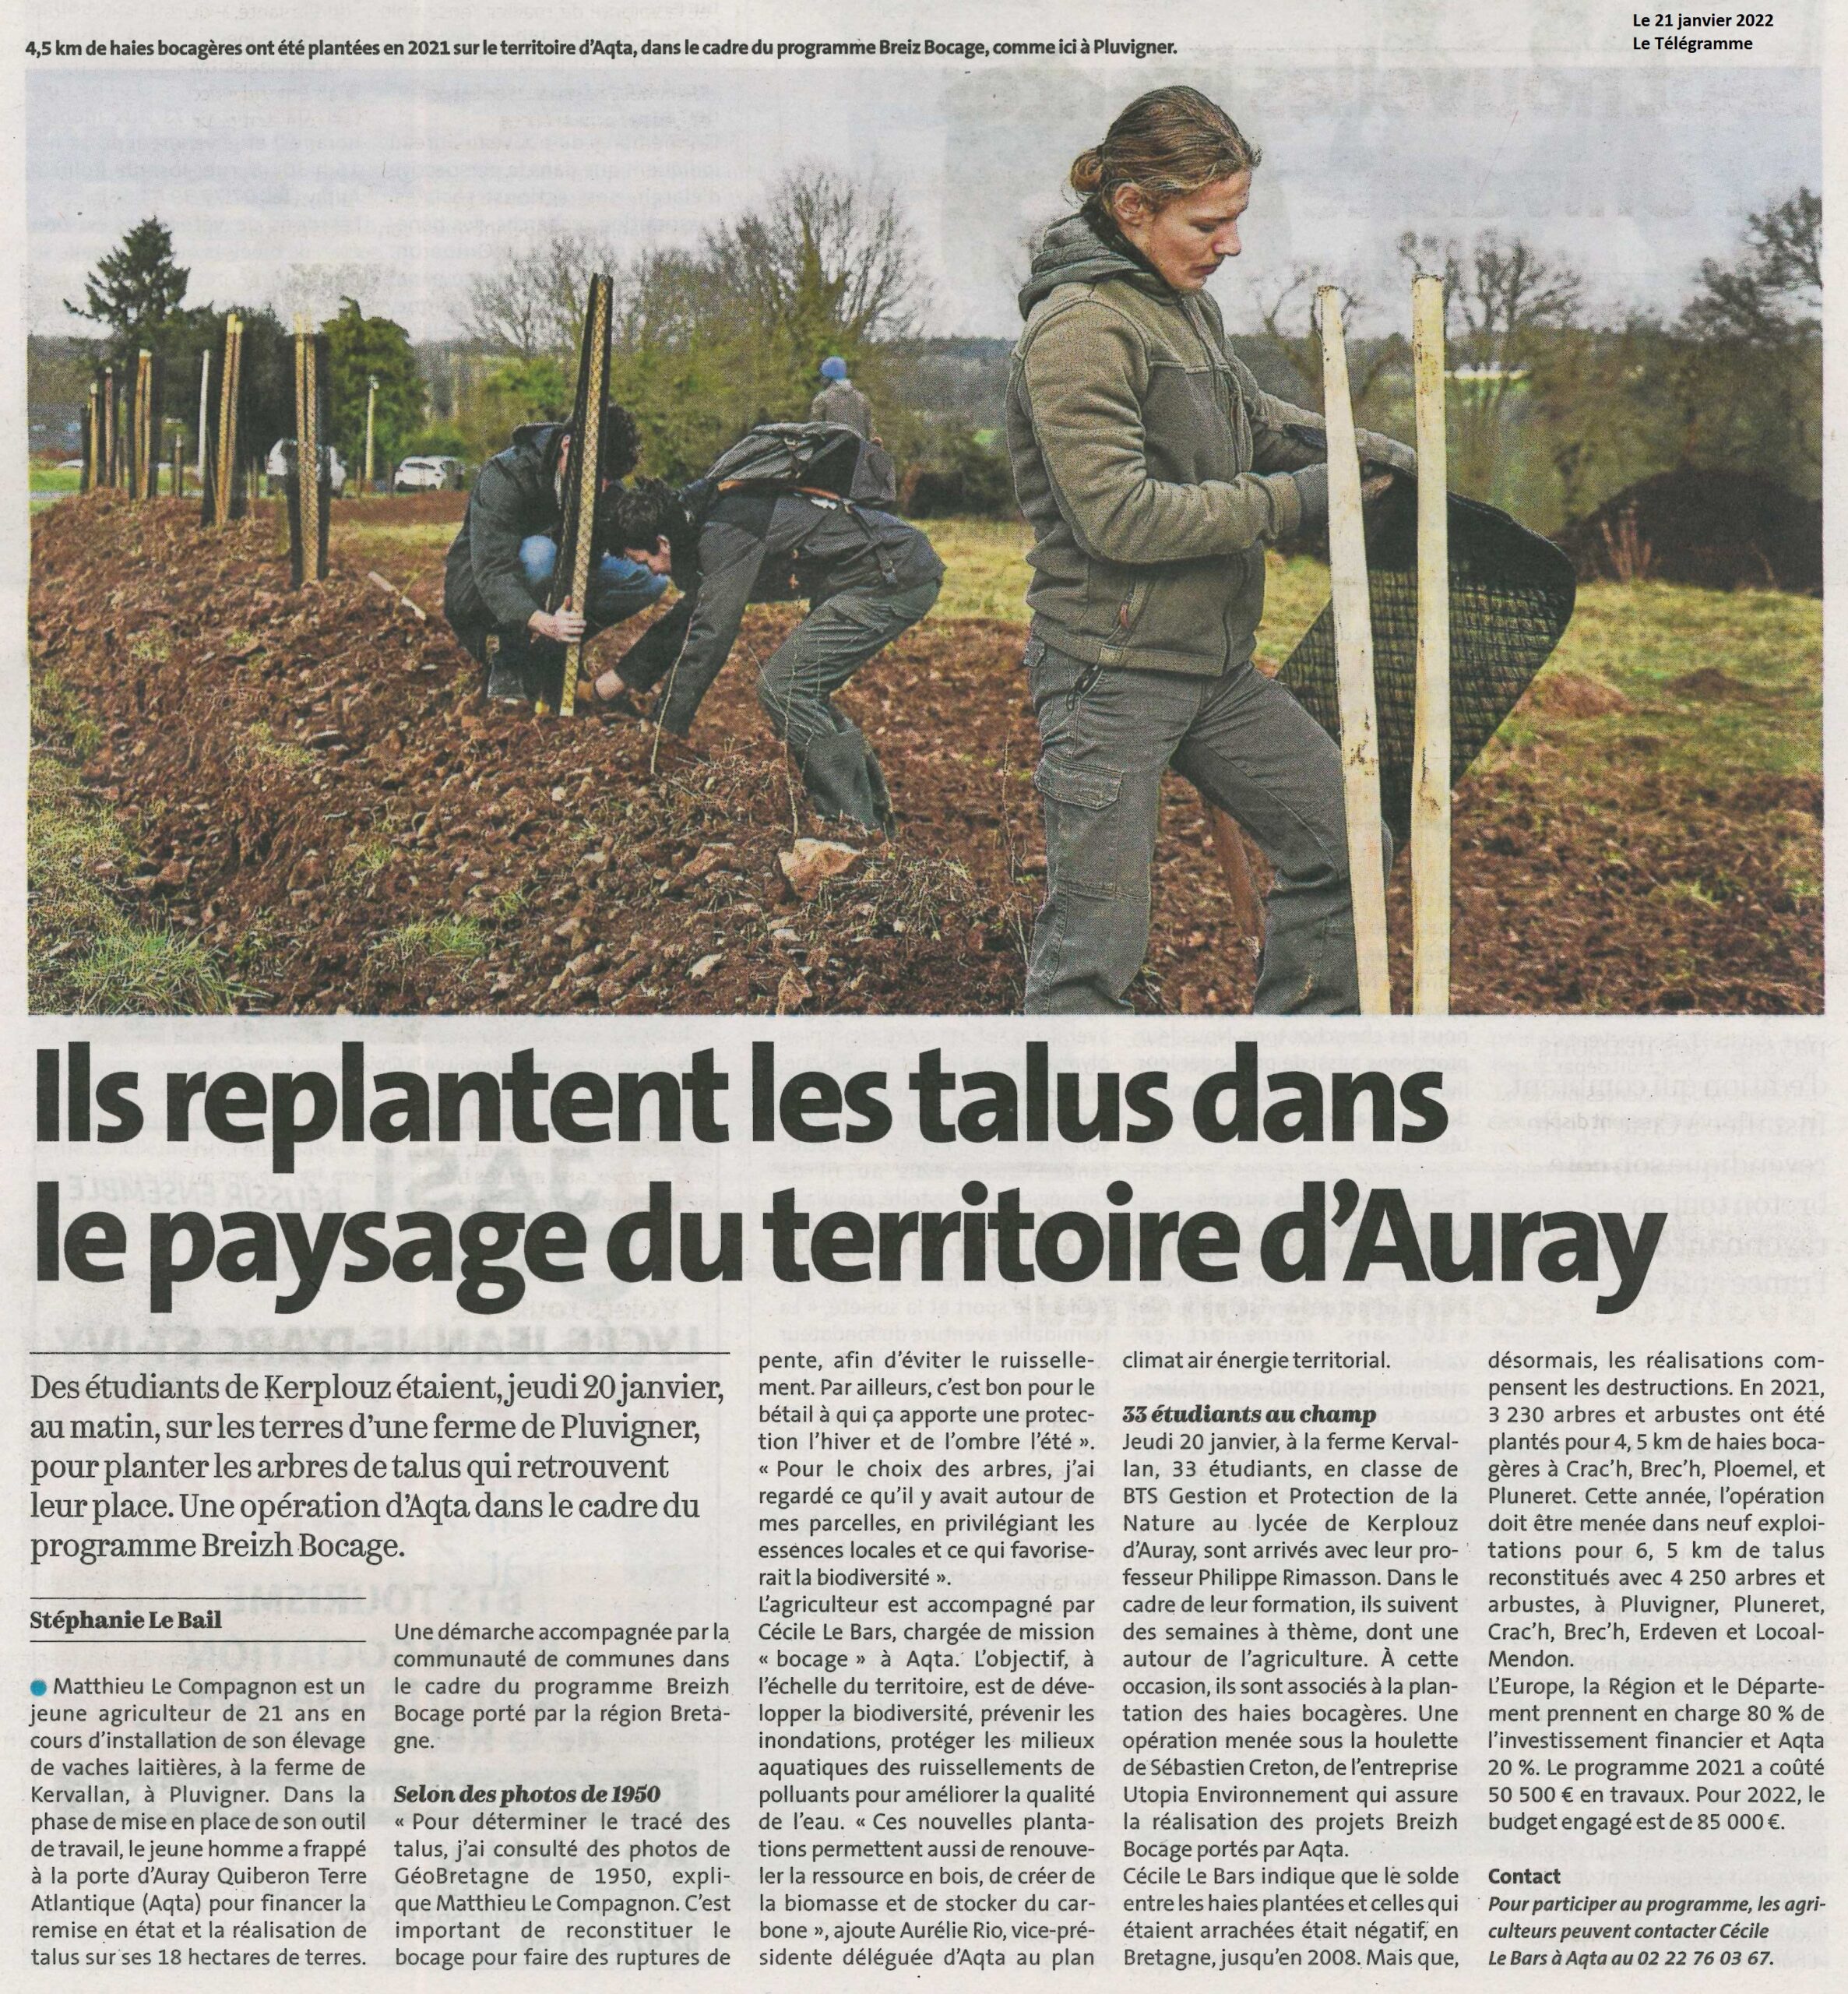 Ils replantent les talus dans le paysage du territoire d’Auray (2 articles Le Télégramme + Ouest-France)